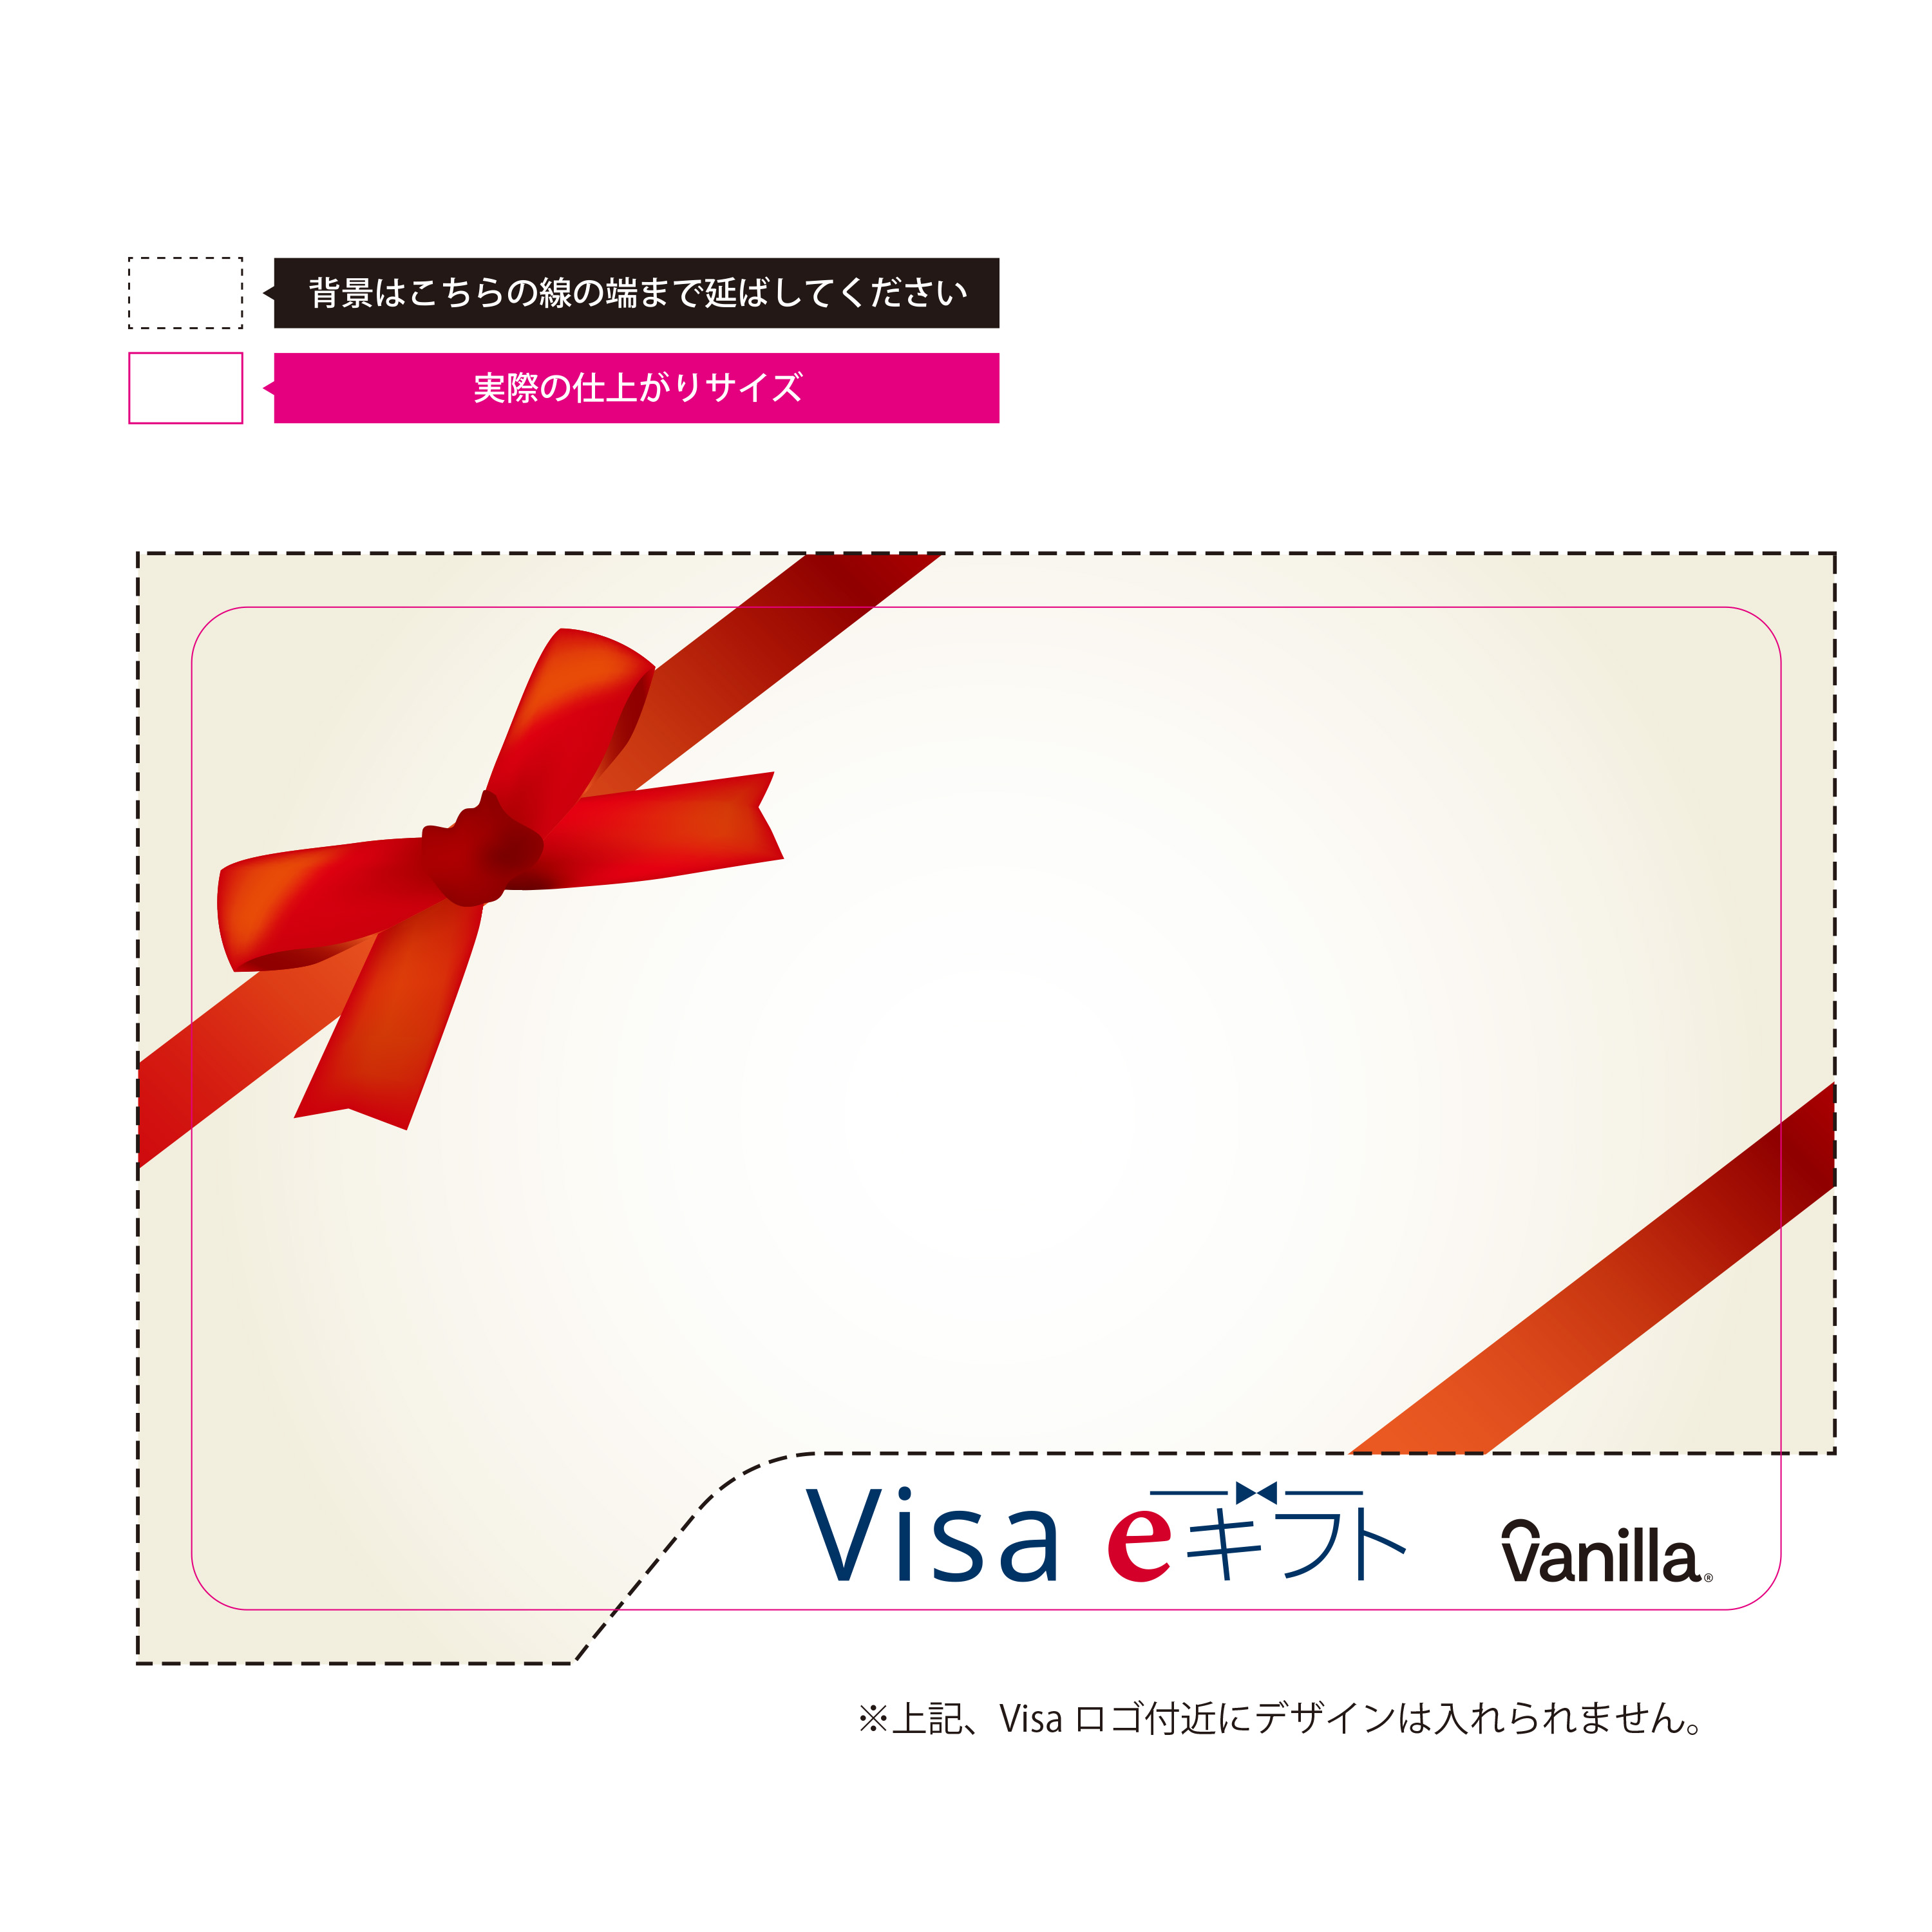 Visa eギフト vanilla オリジナルギフトカード｜ネット印刷のラクスル